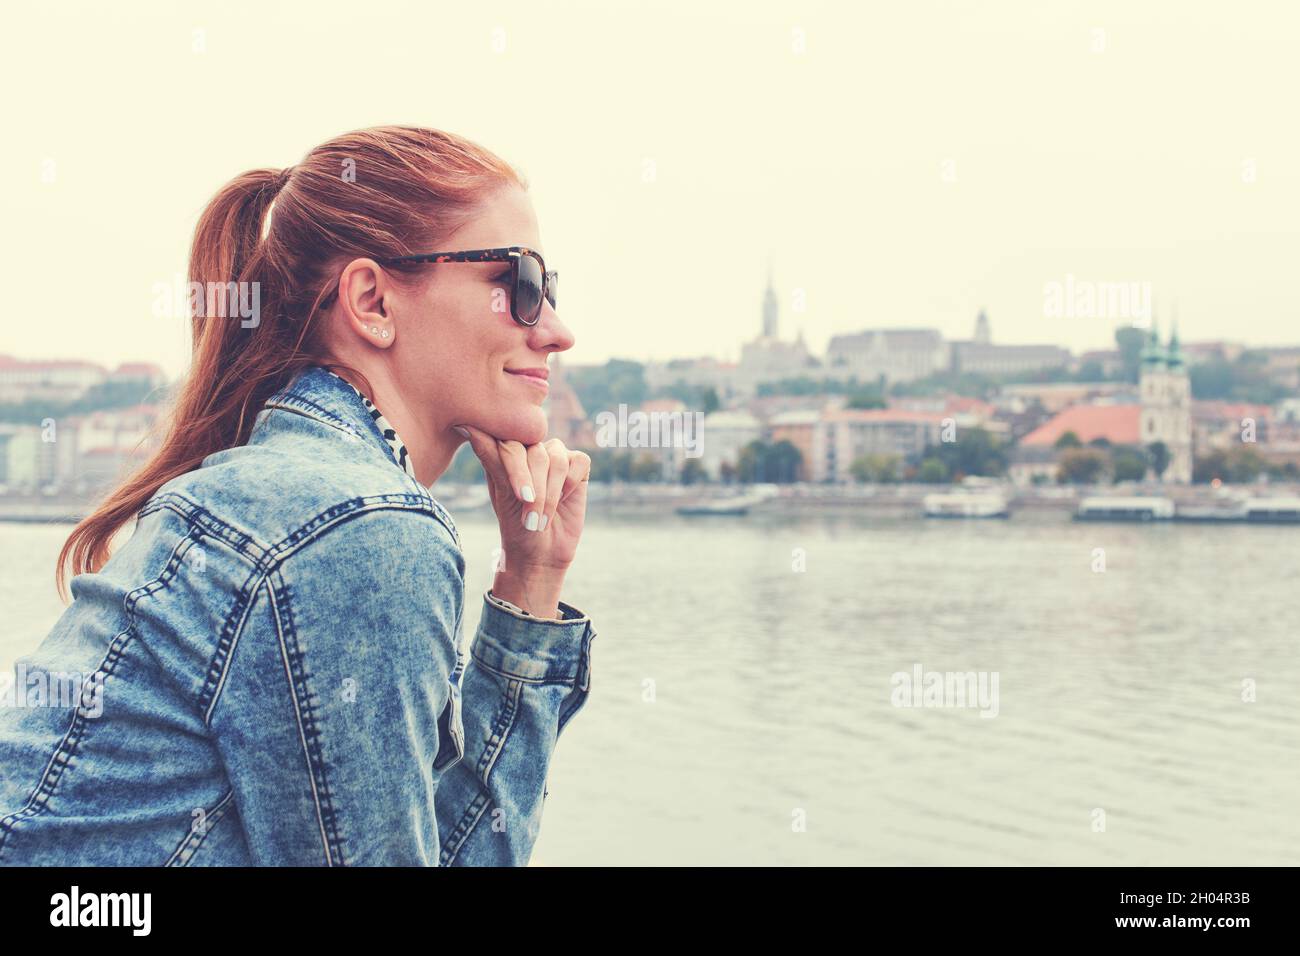 Mujer caucásica joven pelirroja con chaqueta vaquera y gafas de sol vista de perfil en el panorama de la ciudad Foto de stock